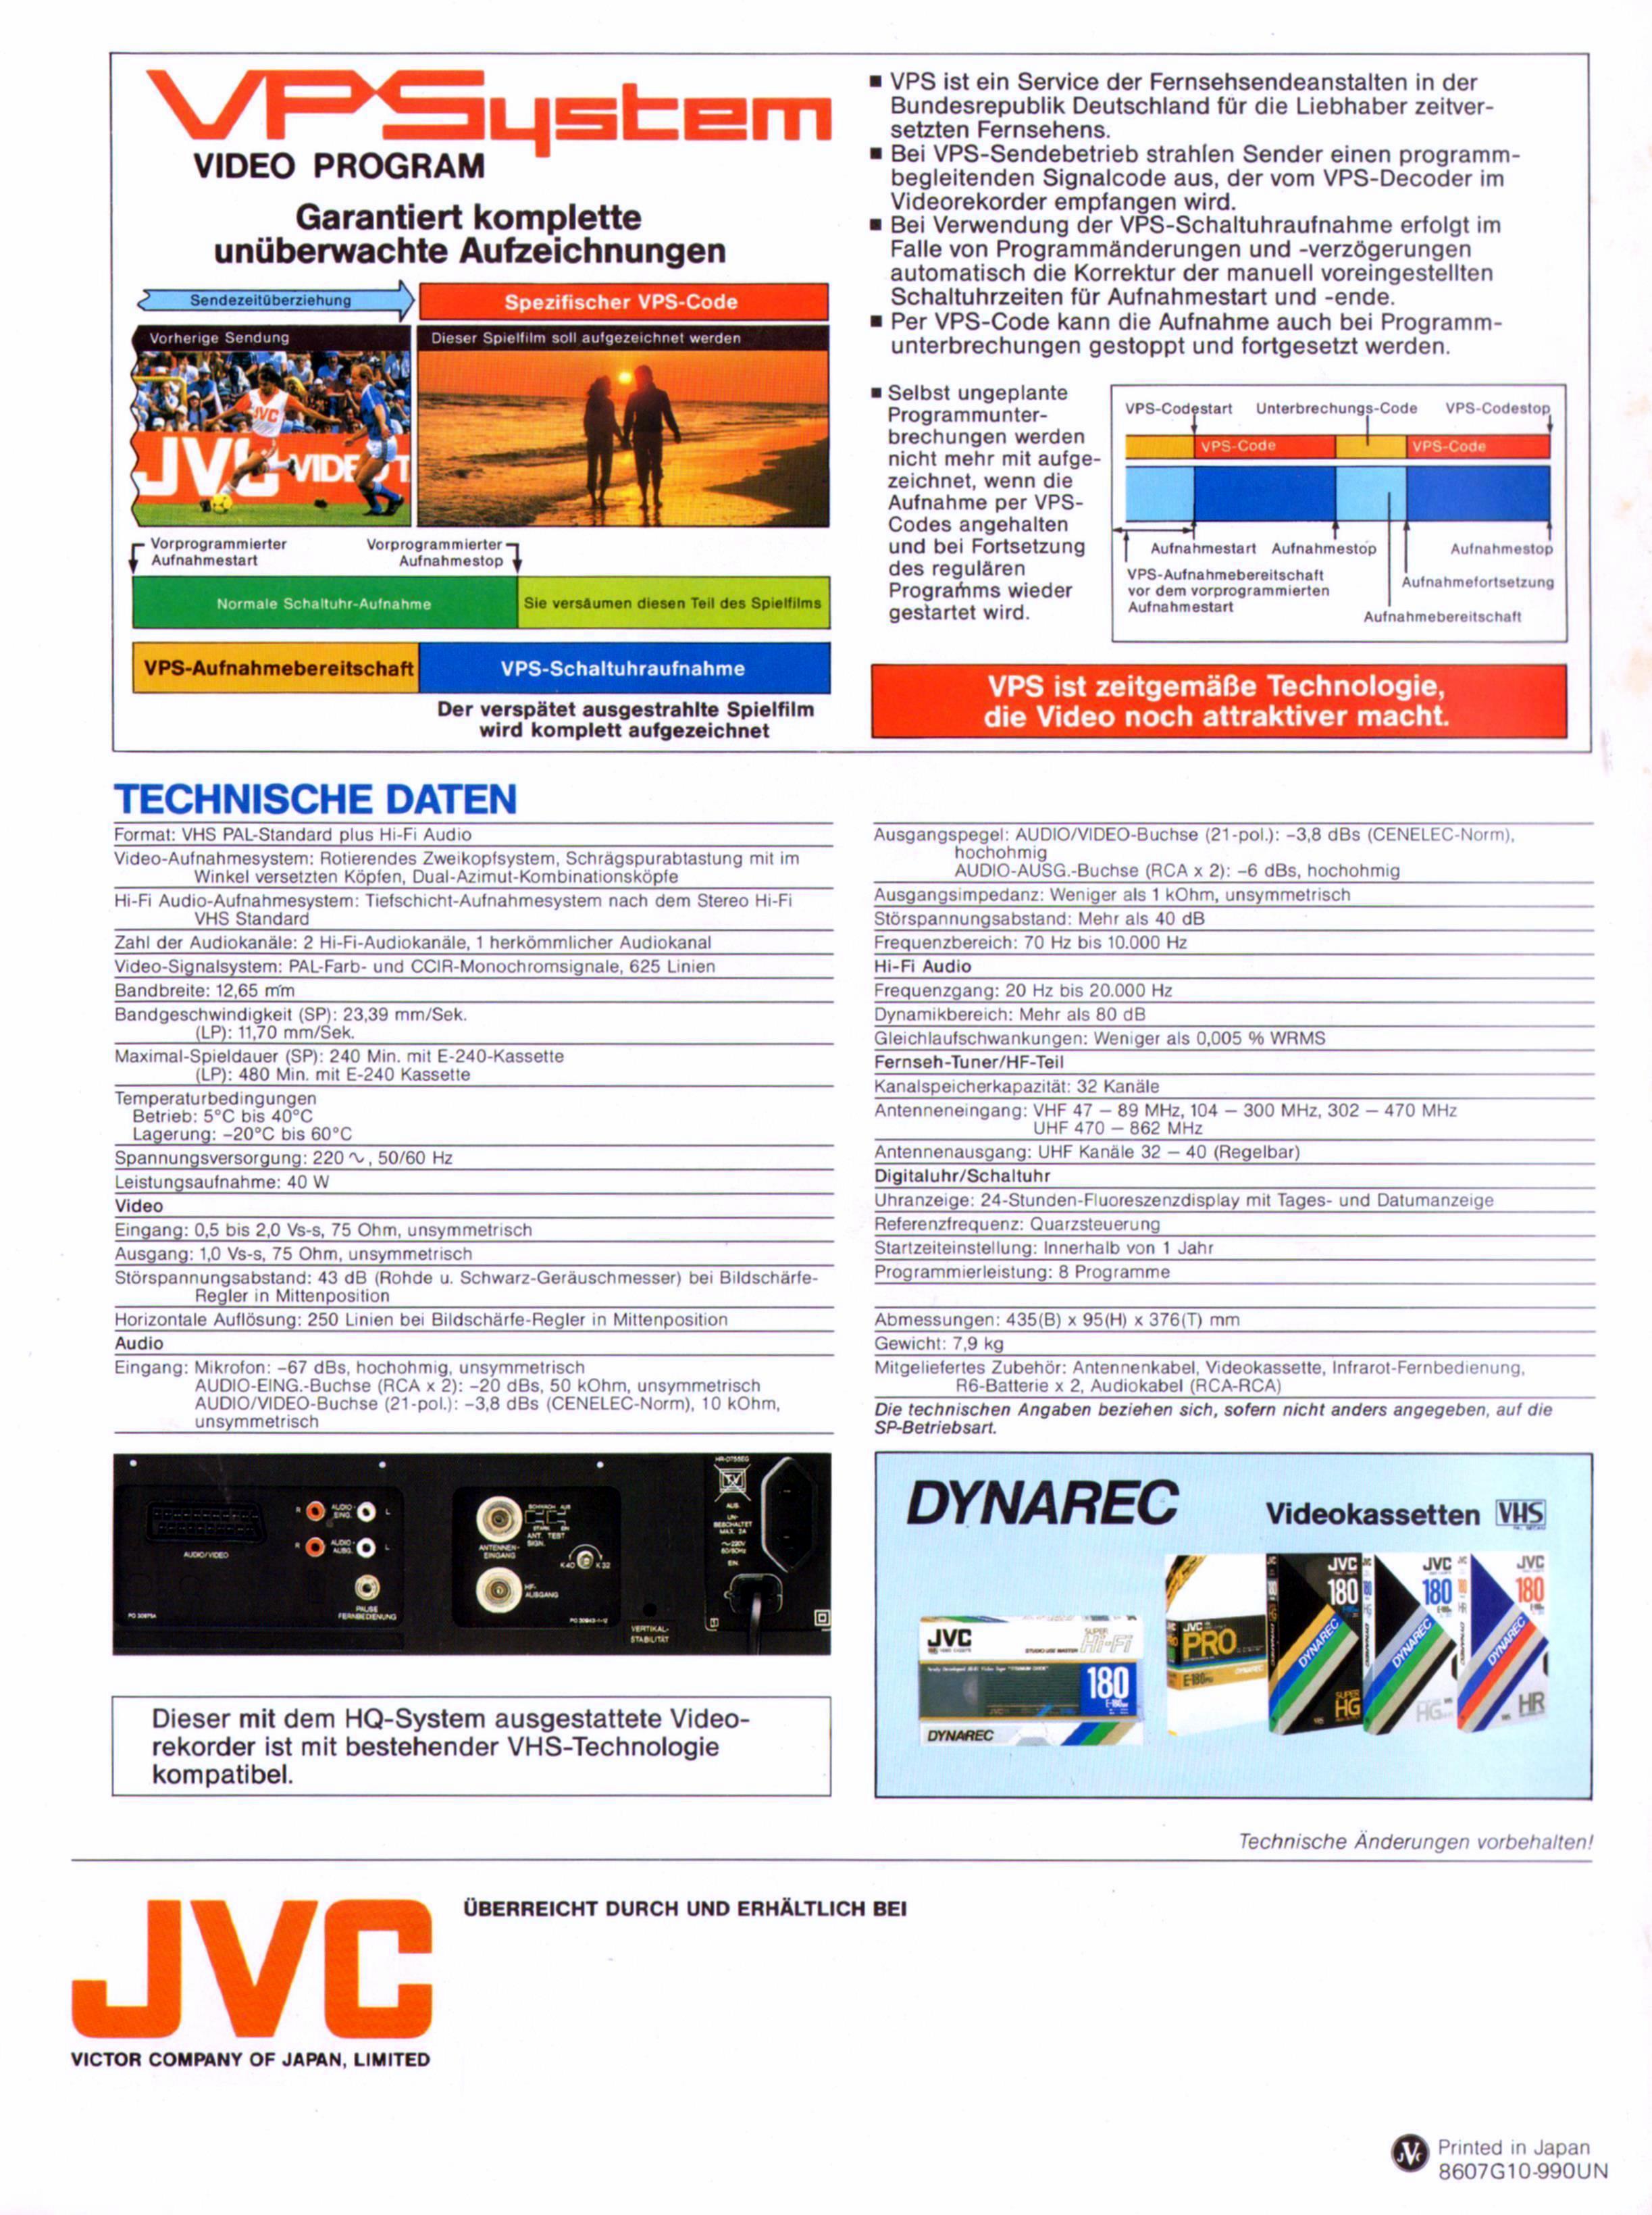 JVC HR-D 755-Daten-1987.jpg